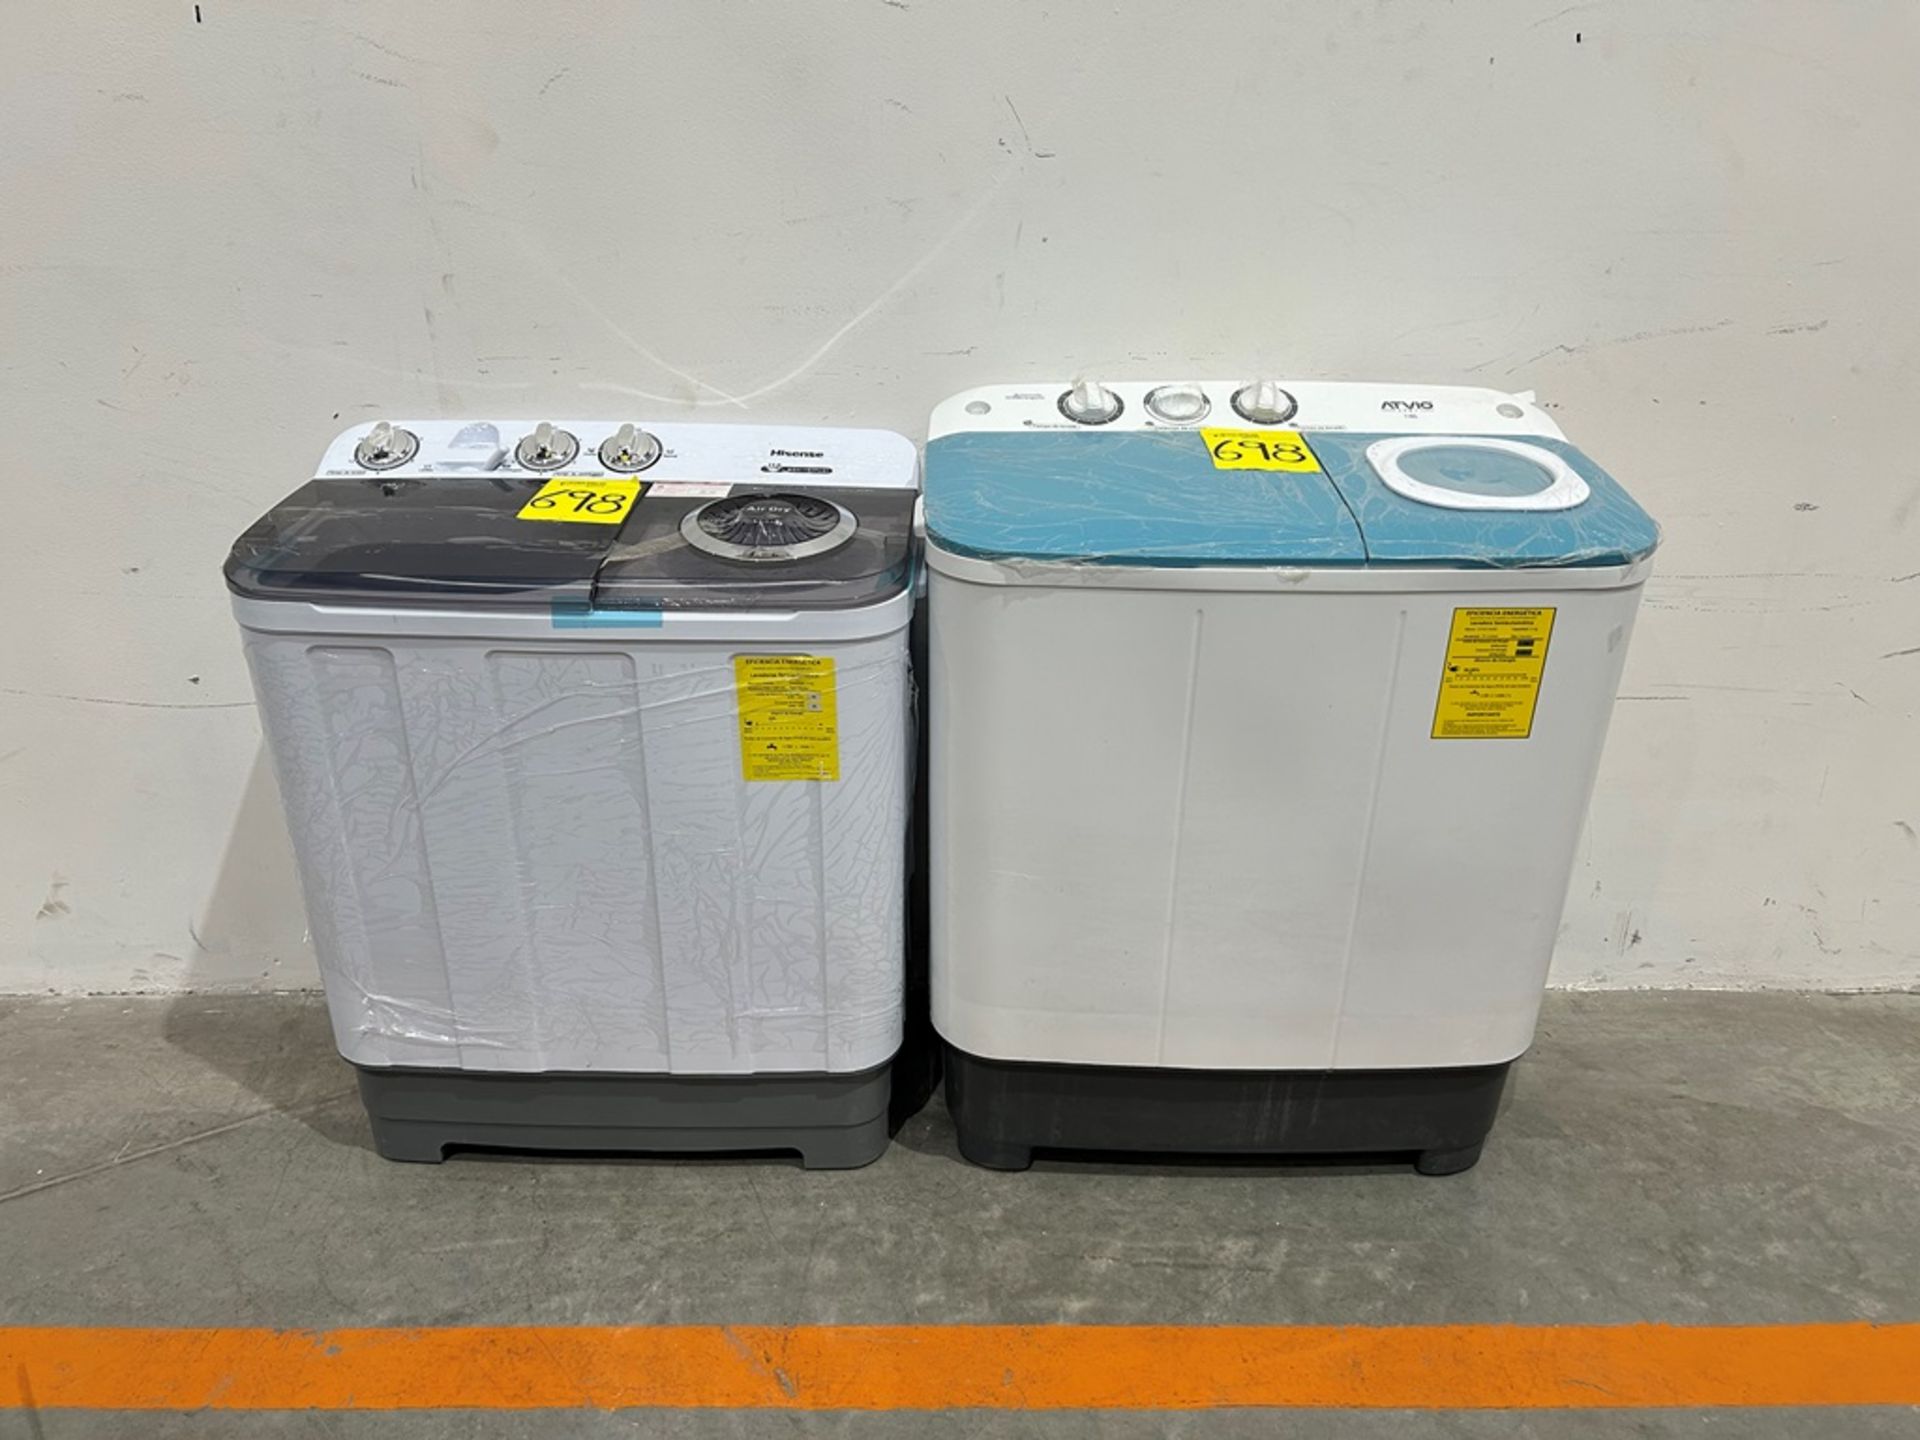 Lote de 2 lavadoras contiene: 1 Lavadora de 11 KG, Marca ATVIO, Modelo K9357701, Serie 500057, Colo